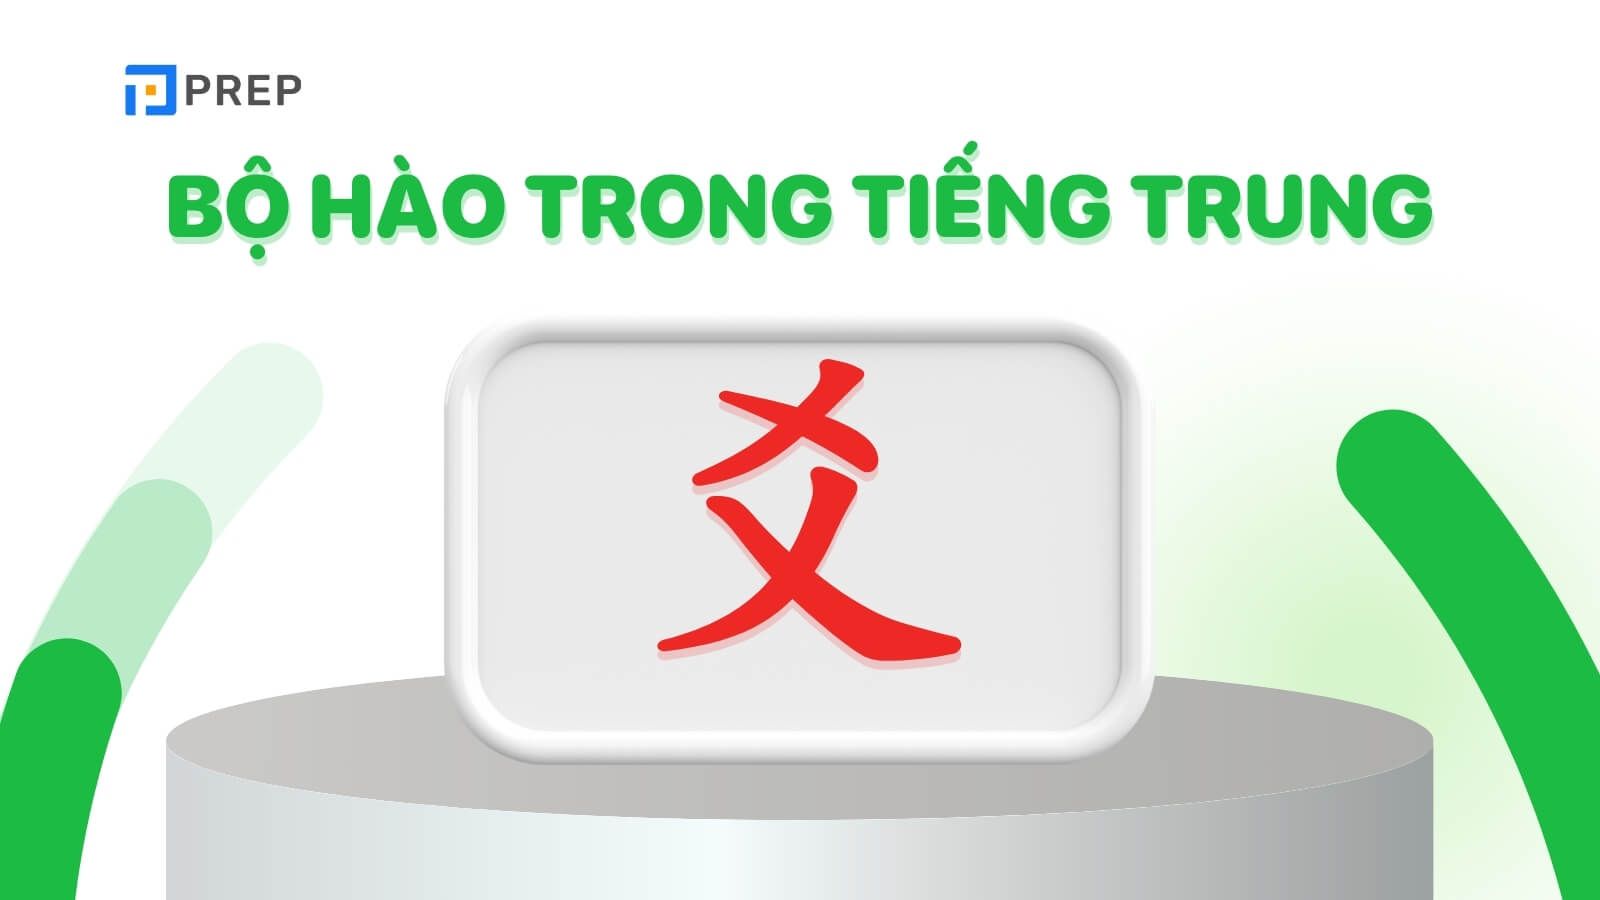 Bộ Hào trong tiếng Trung là gì?